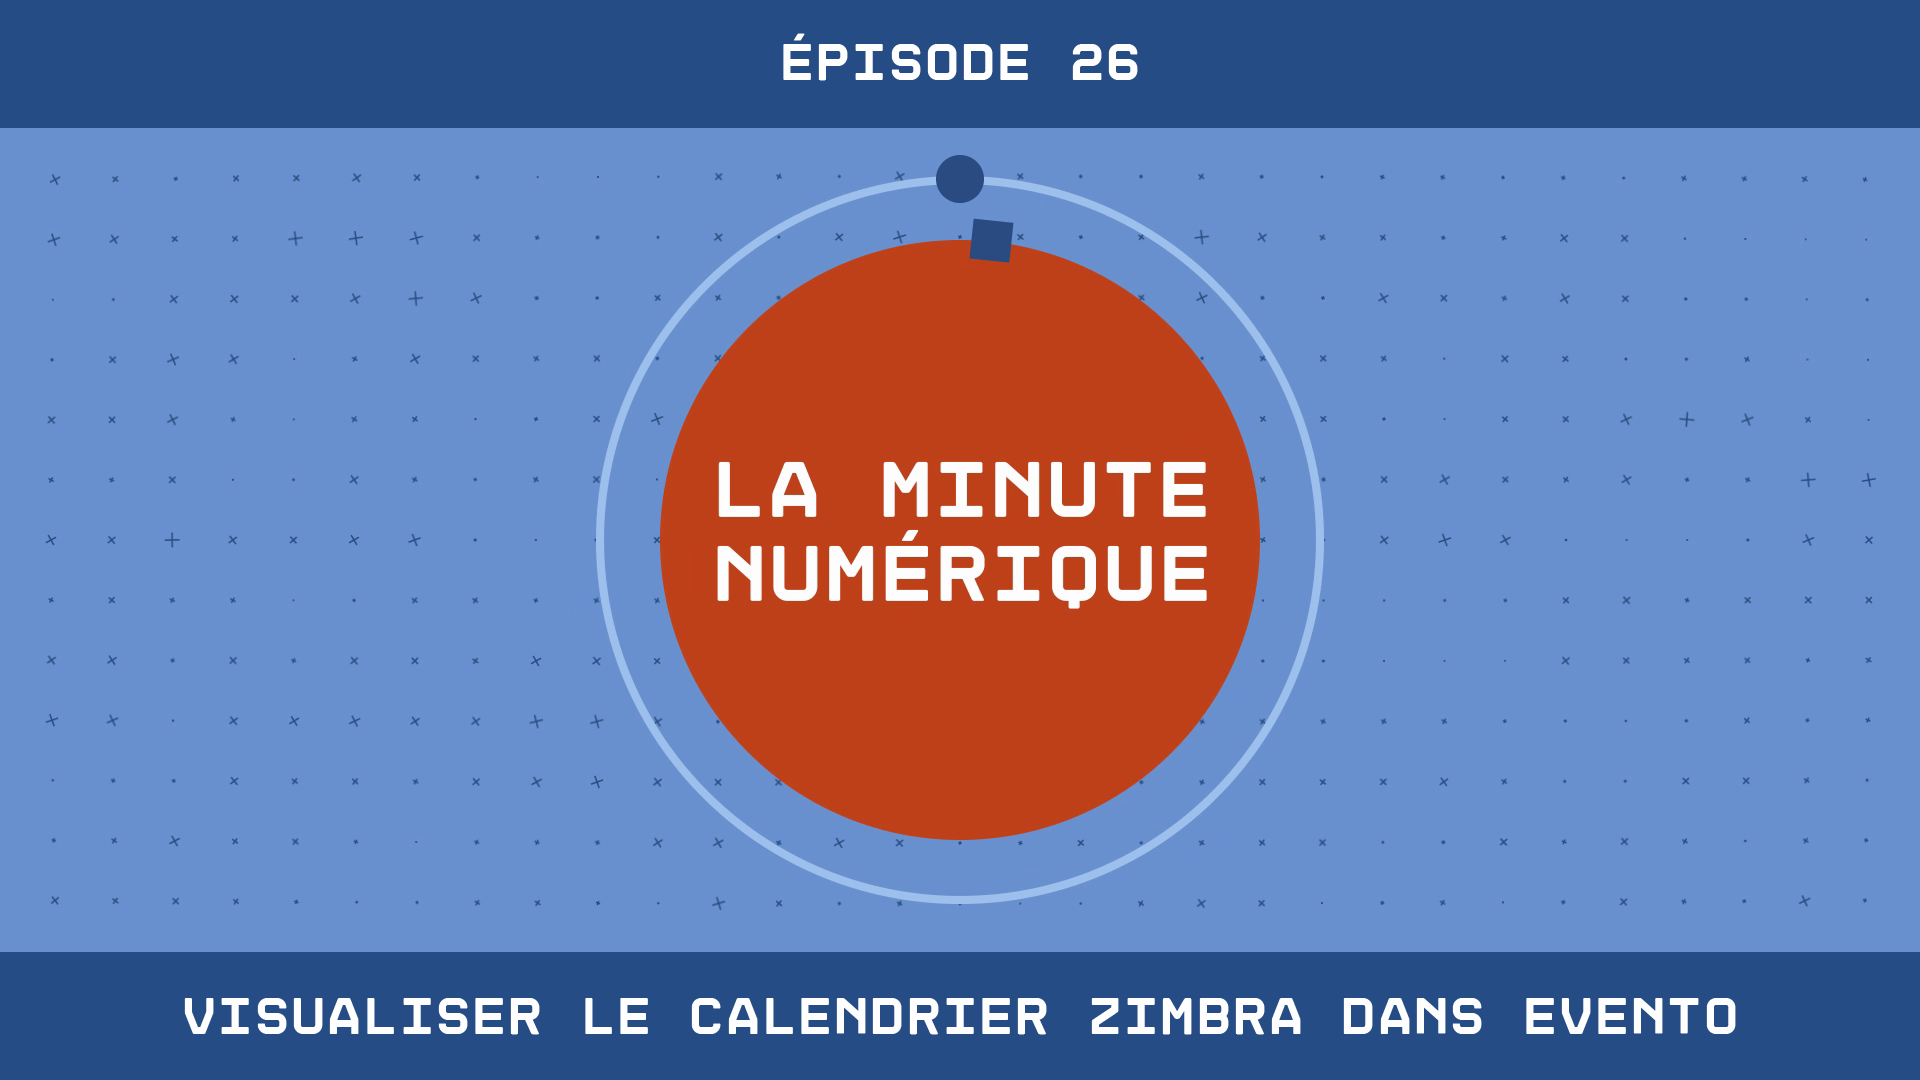 La Minute Numérique - Épisode 26 - Visualiser le calendrier Zimbra dans Evento